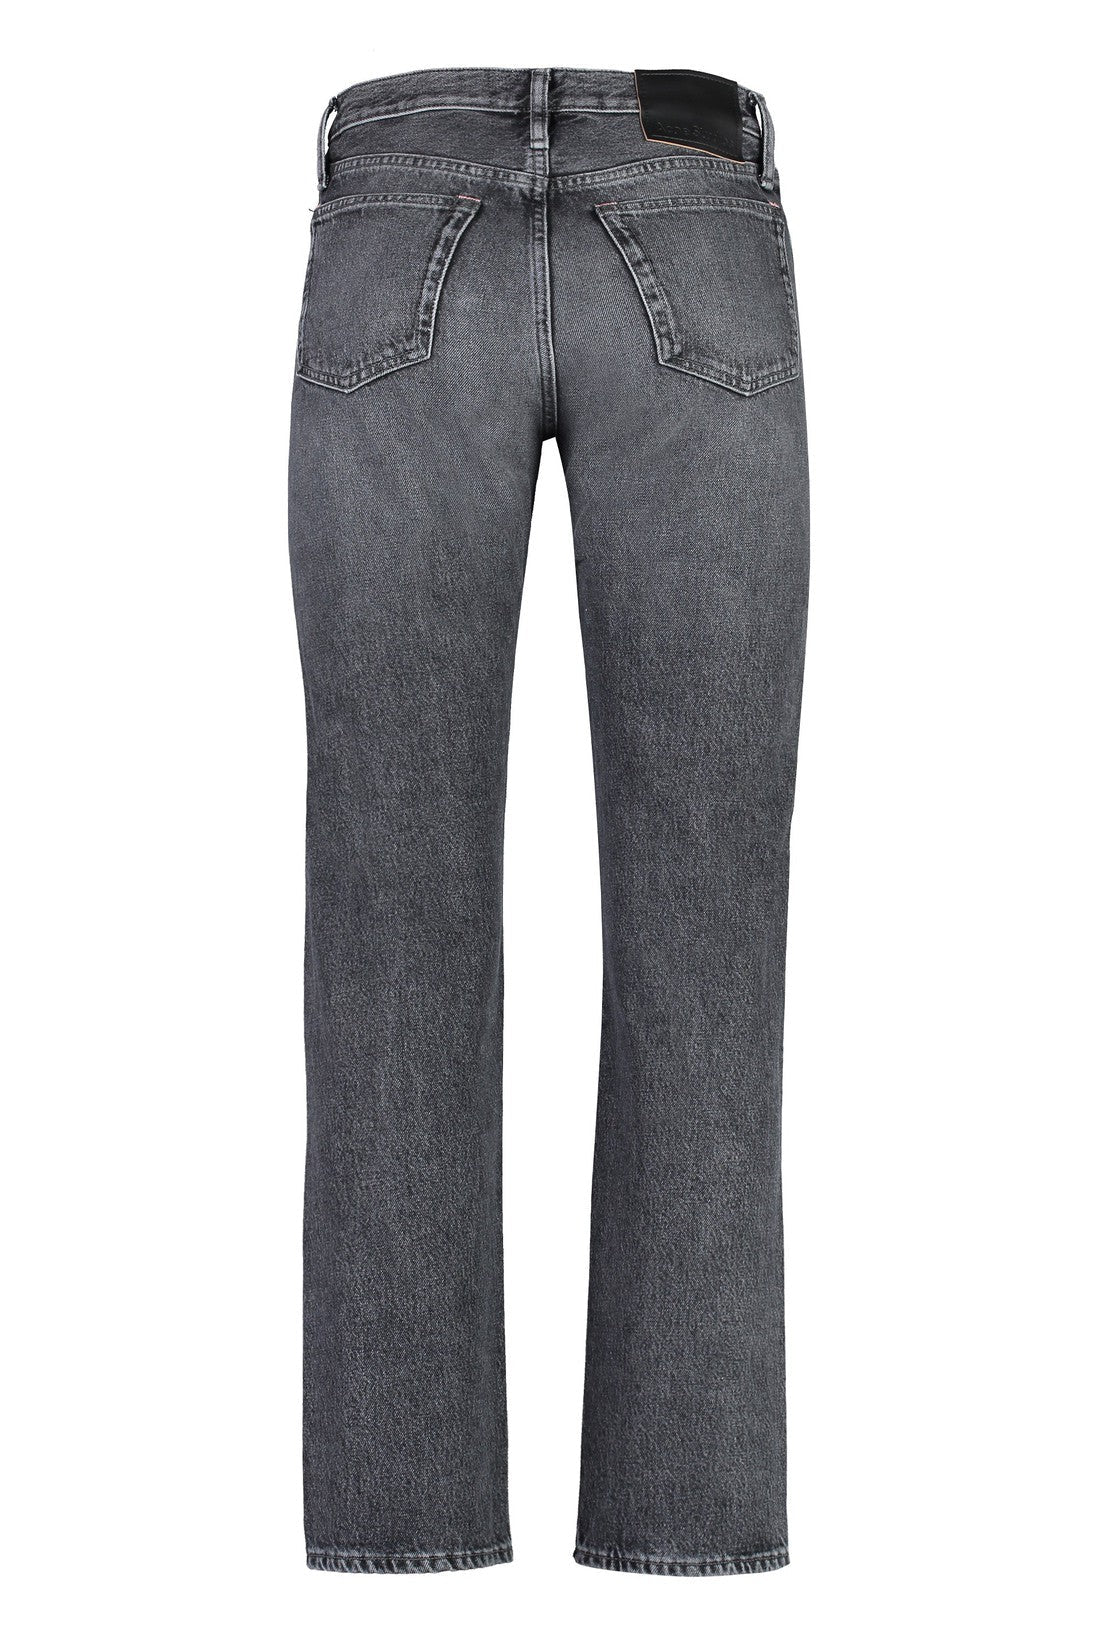 Acne Studios-OUTLET-SALE-5-pocket straight-leg jeans-ARCHIVIST